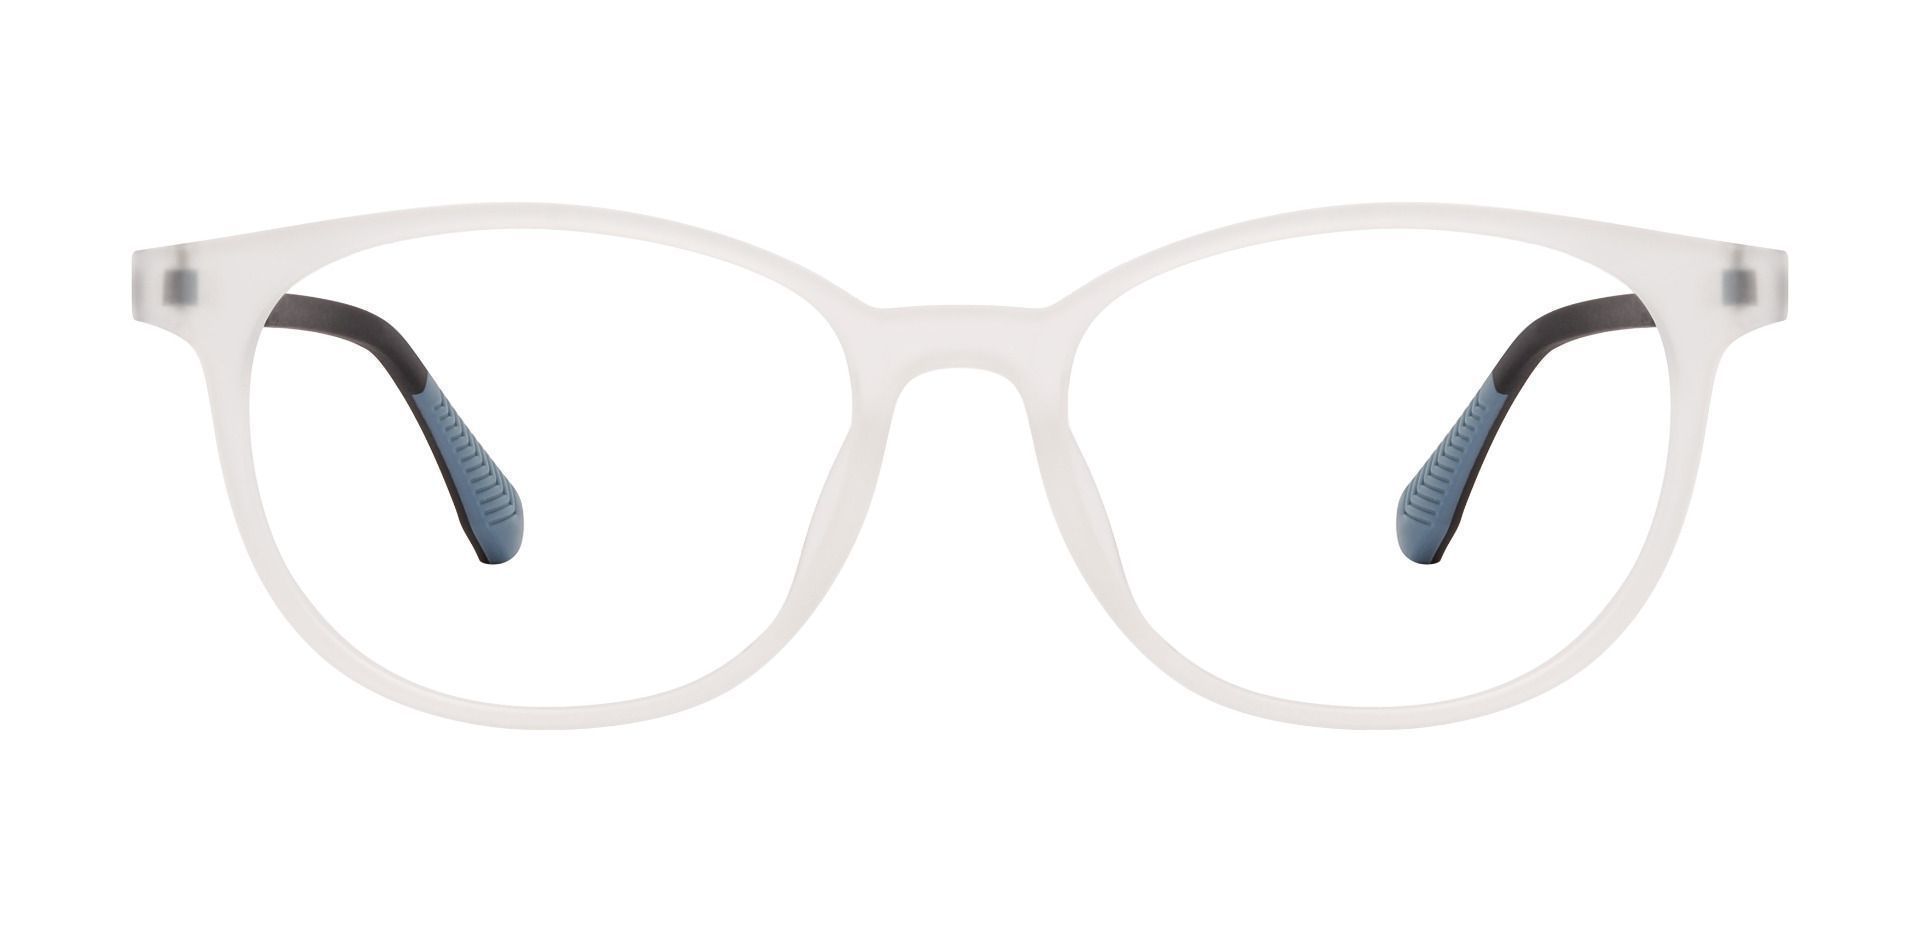 Hannigan Oval Prescription Glasses - Clear